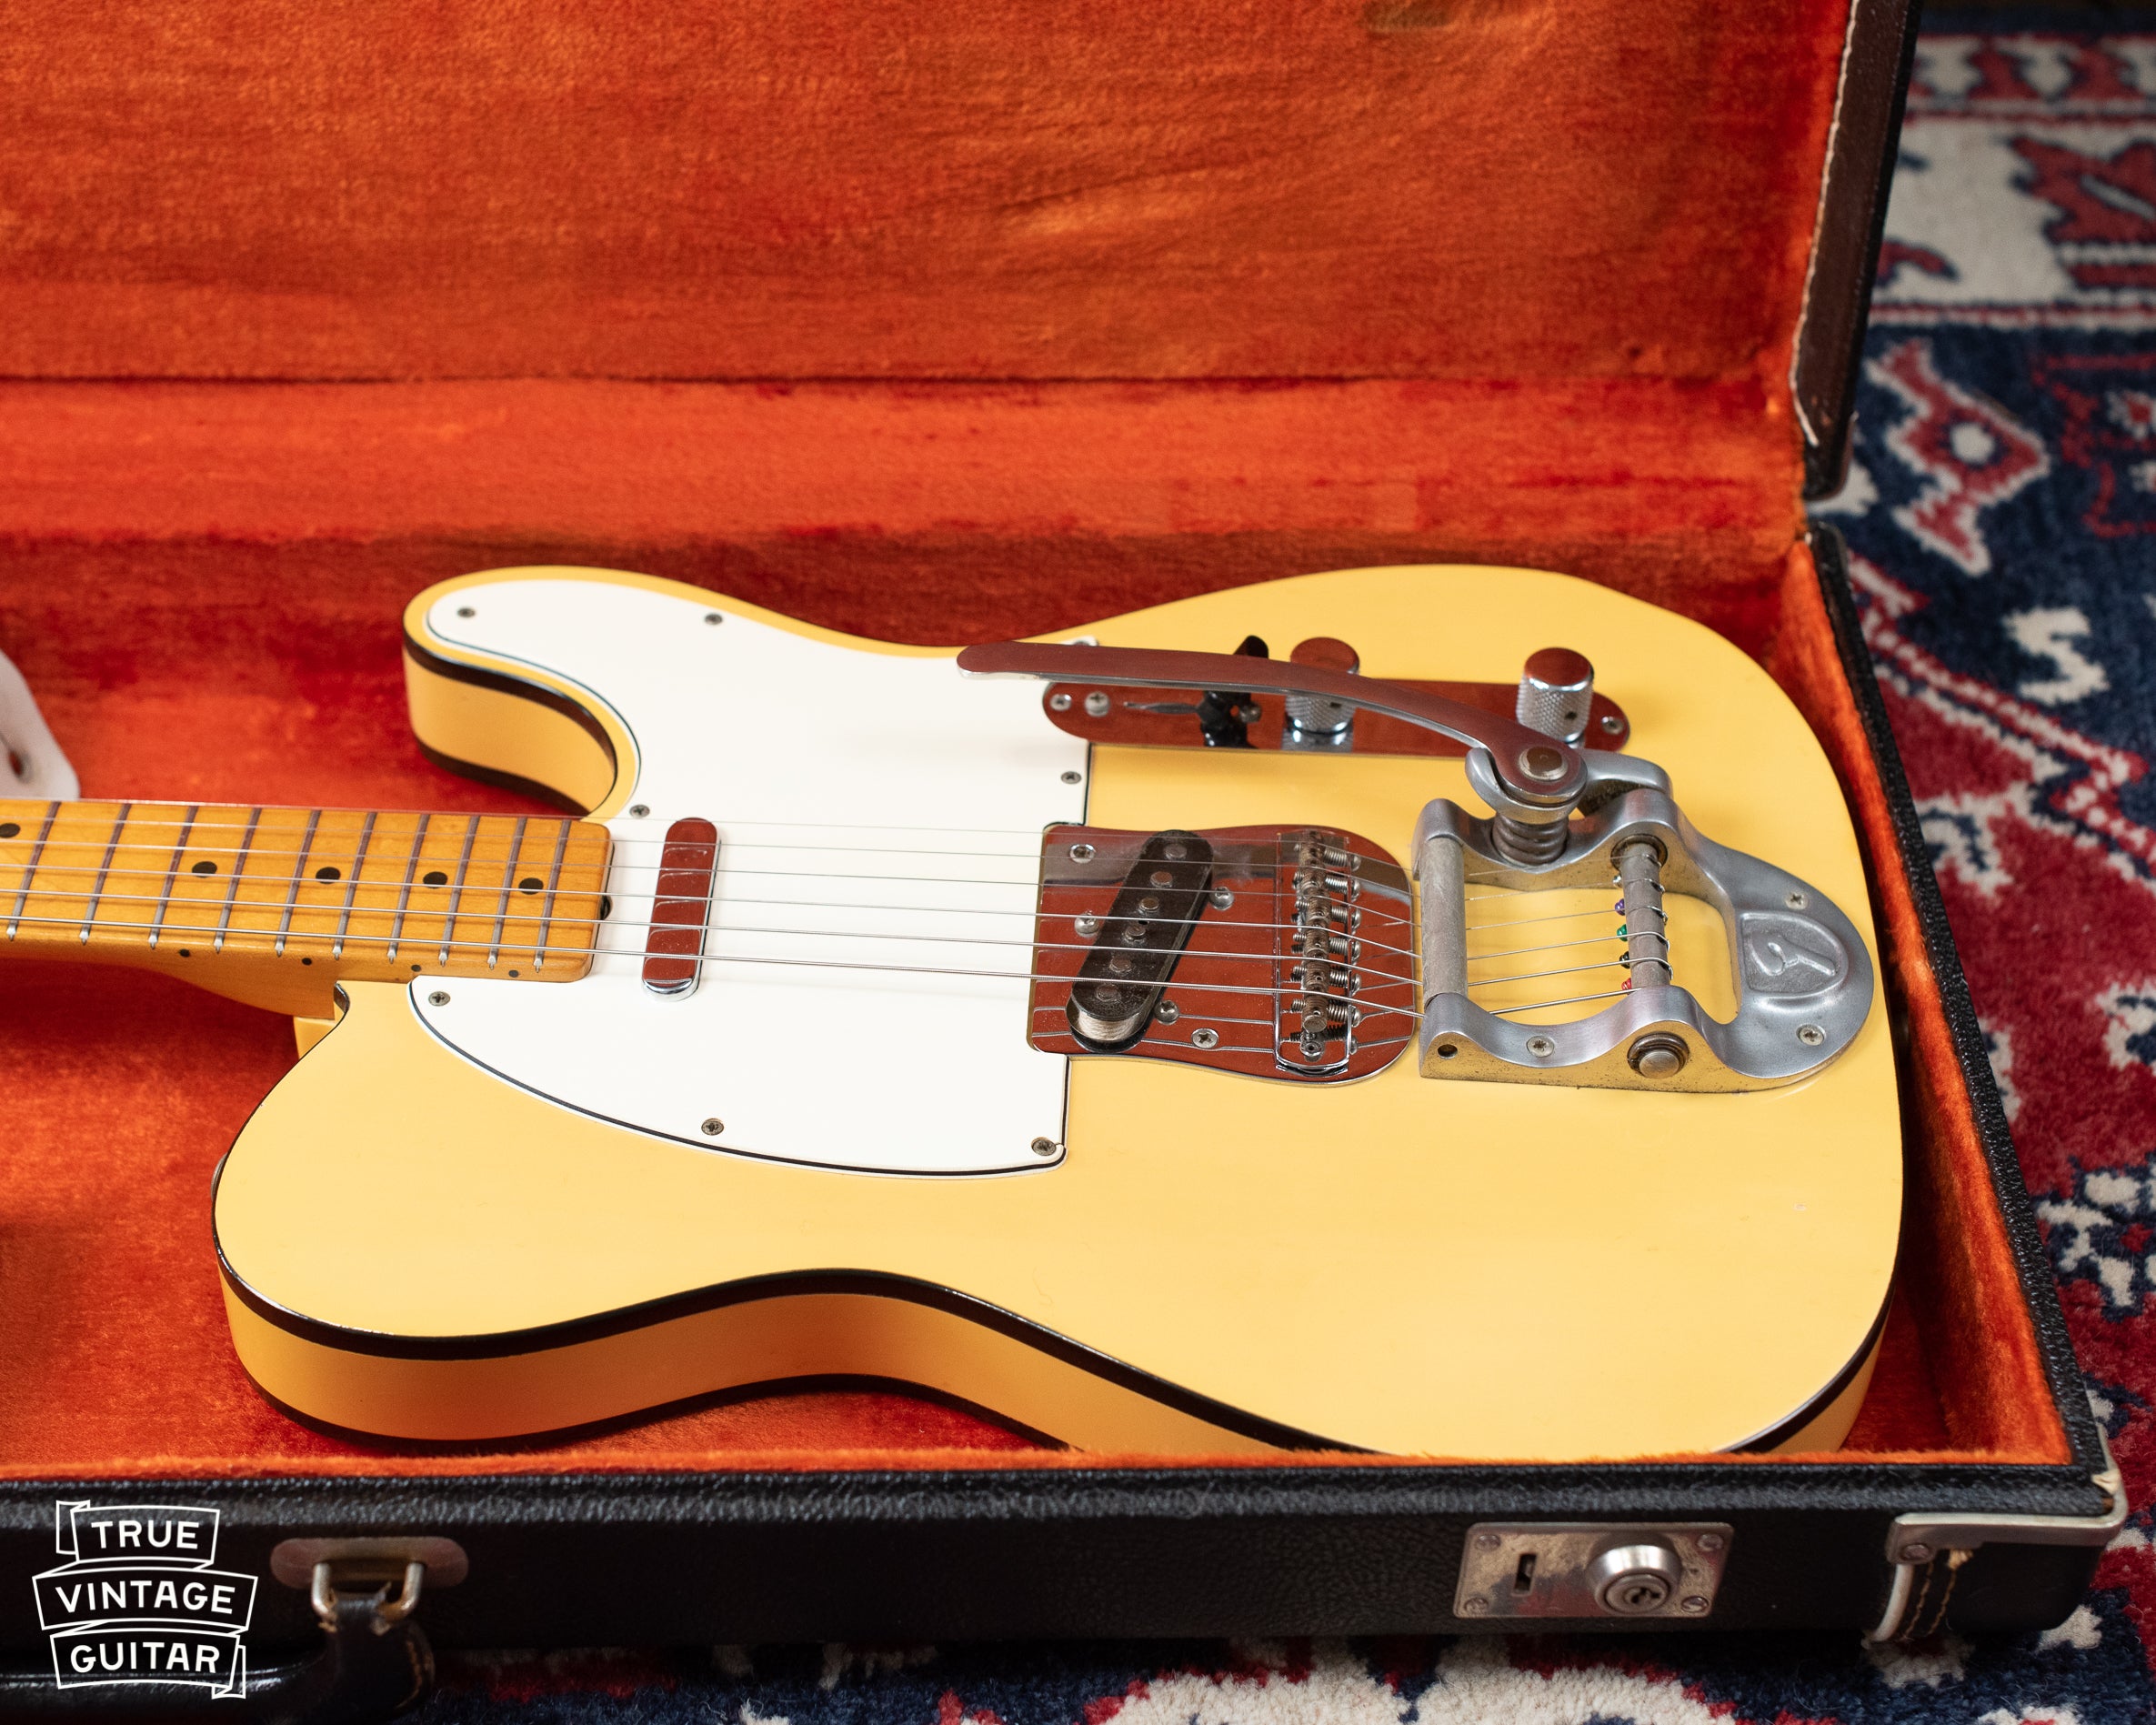 Vintage Fender Telecaster Custom white blond black binding